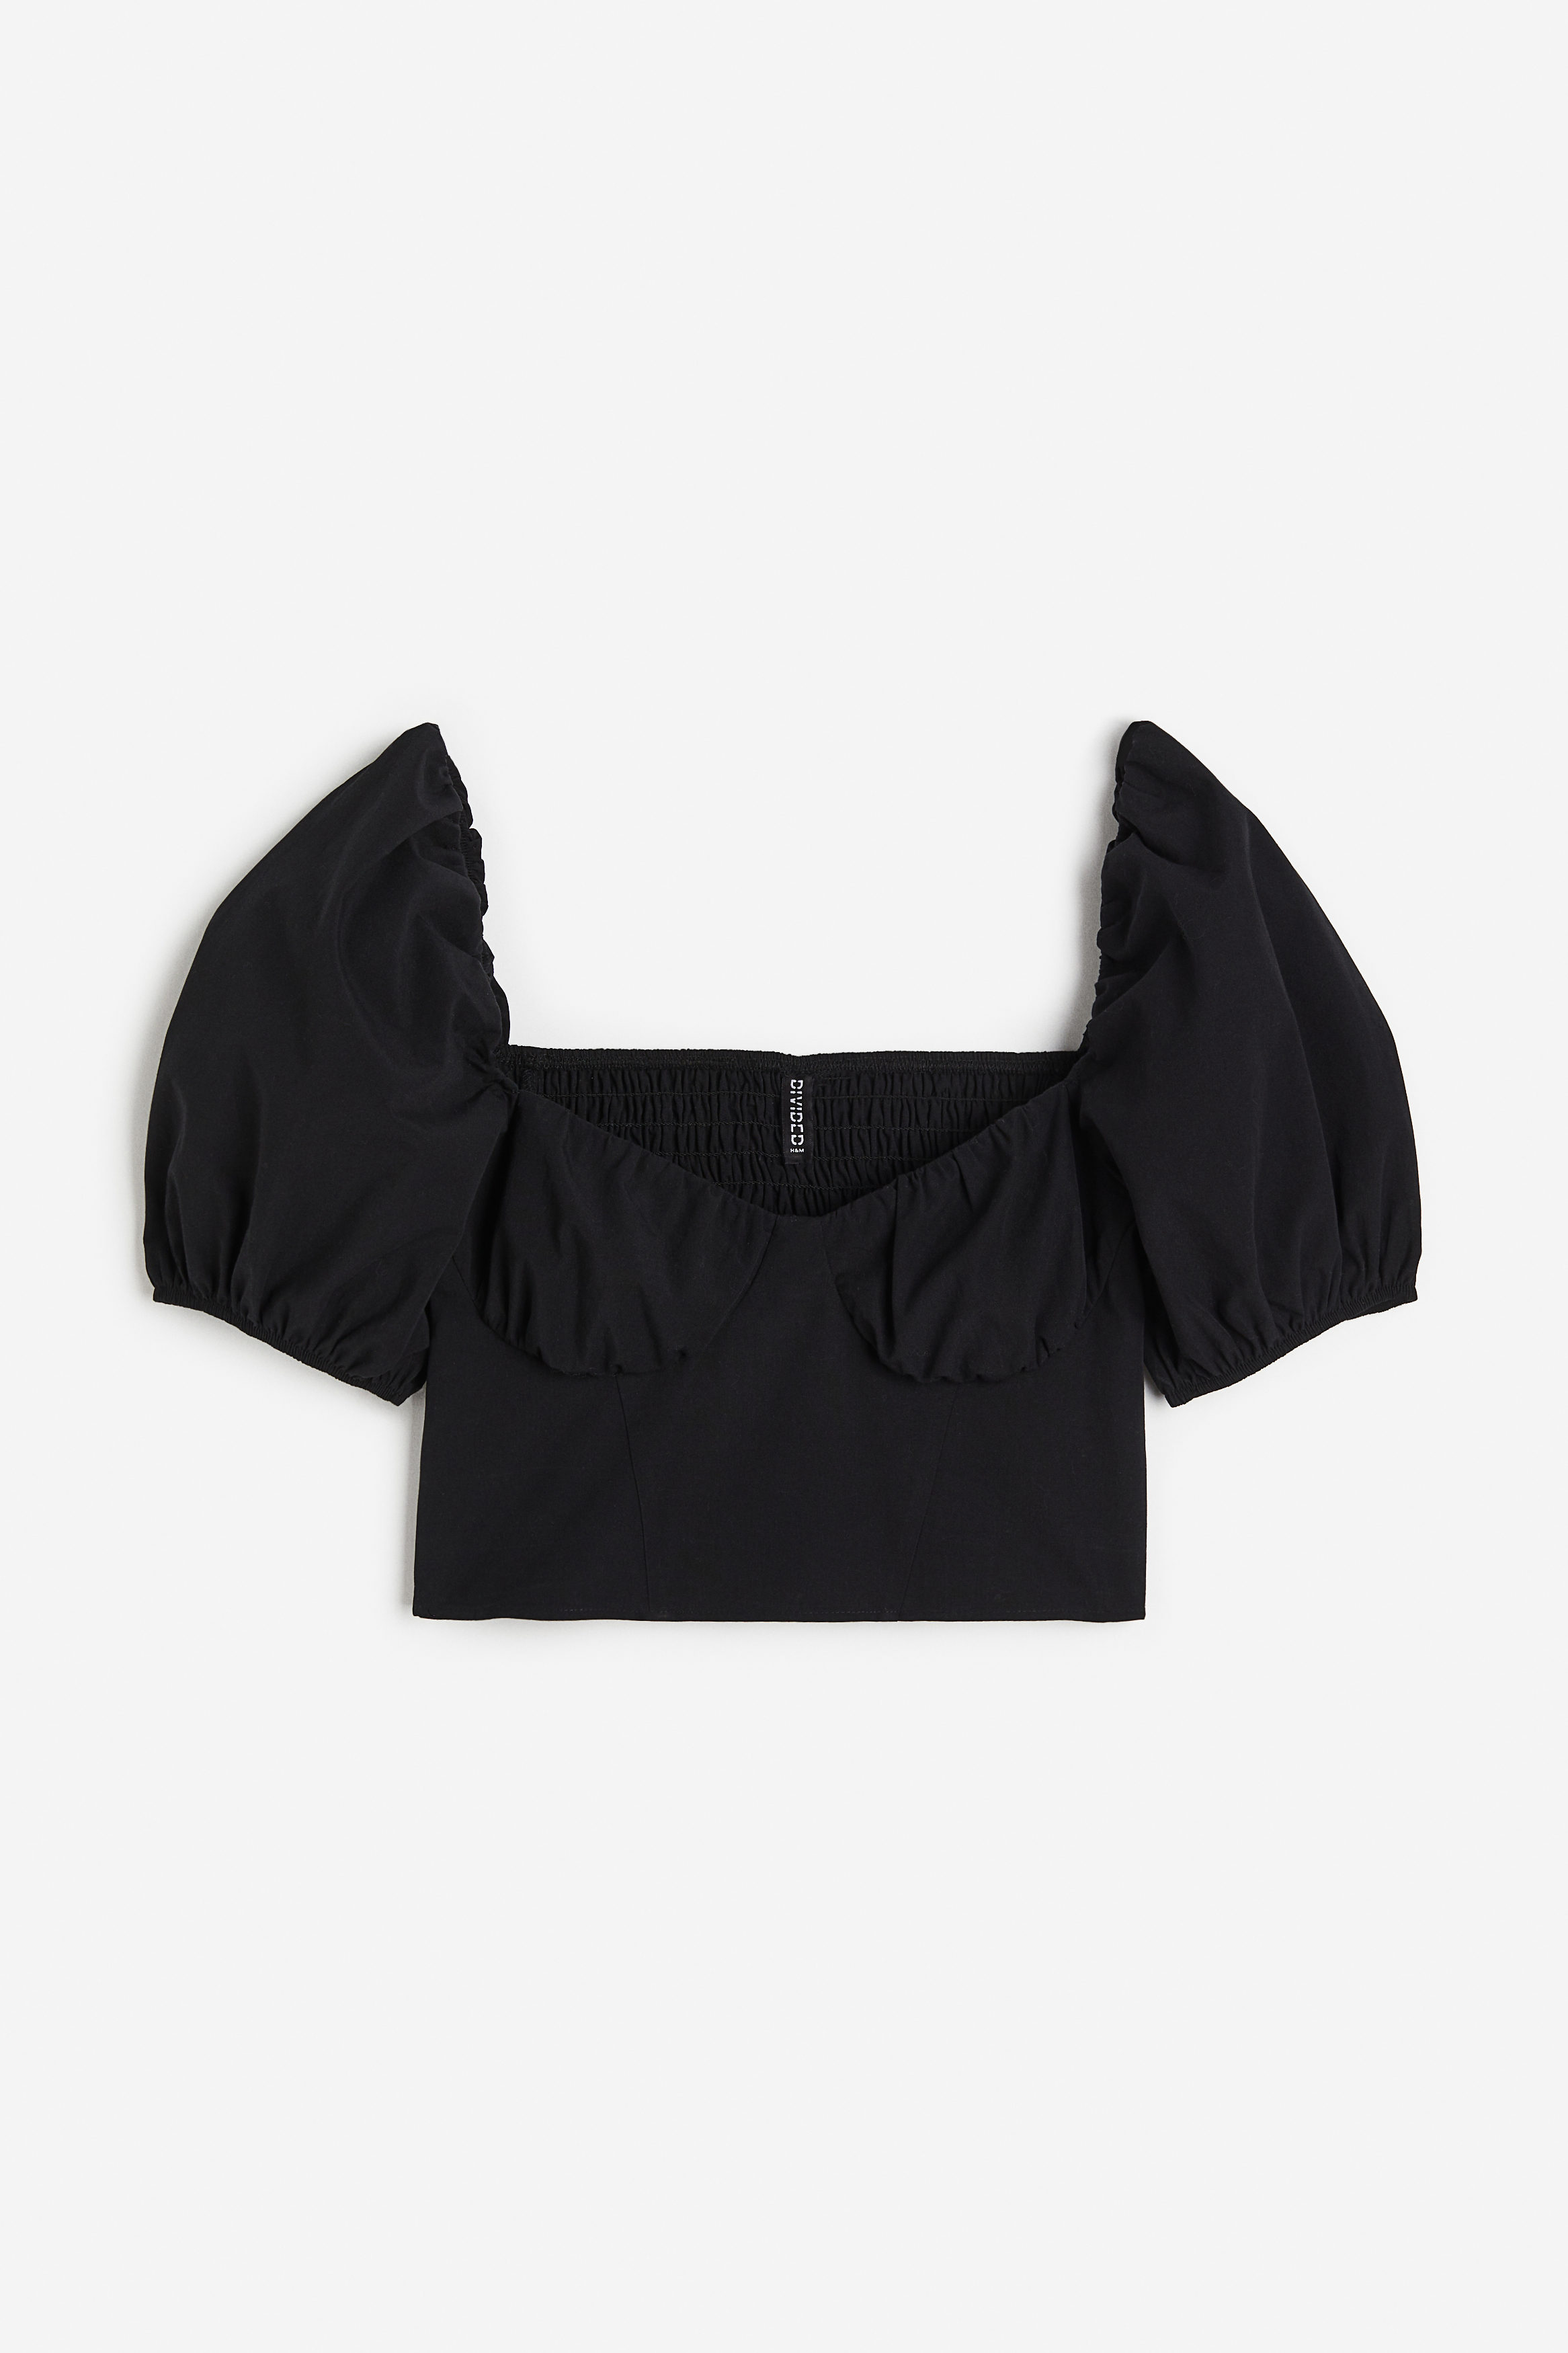 Billede af H&M Cropped Bluse Med Pufærmer Sort, Bluser. Farve: Black I størrelse 34